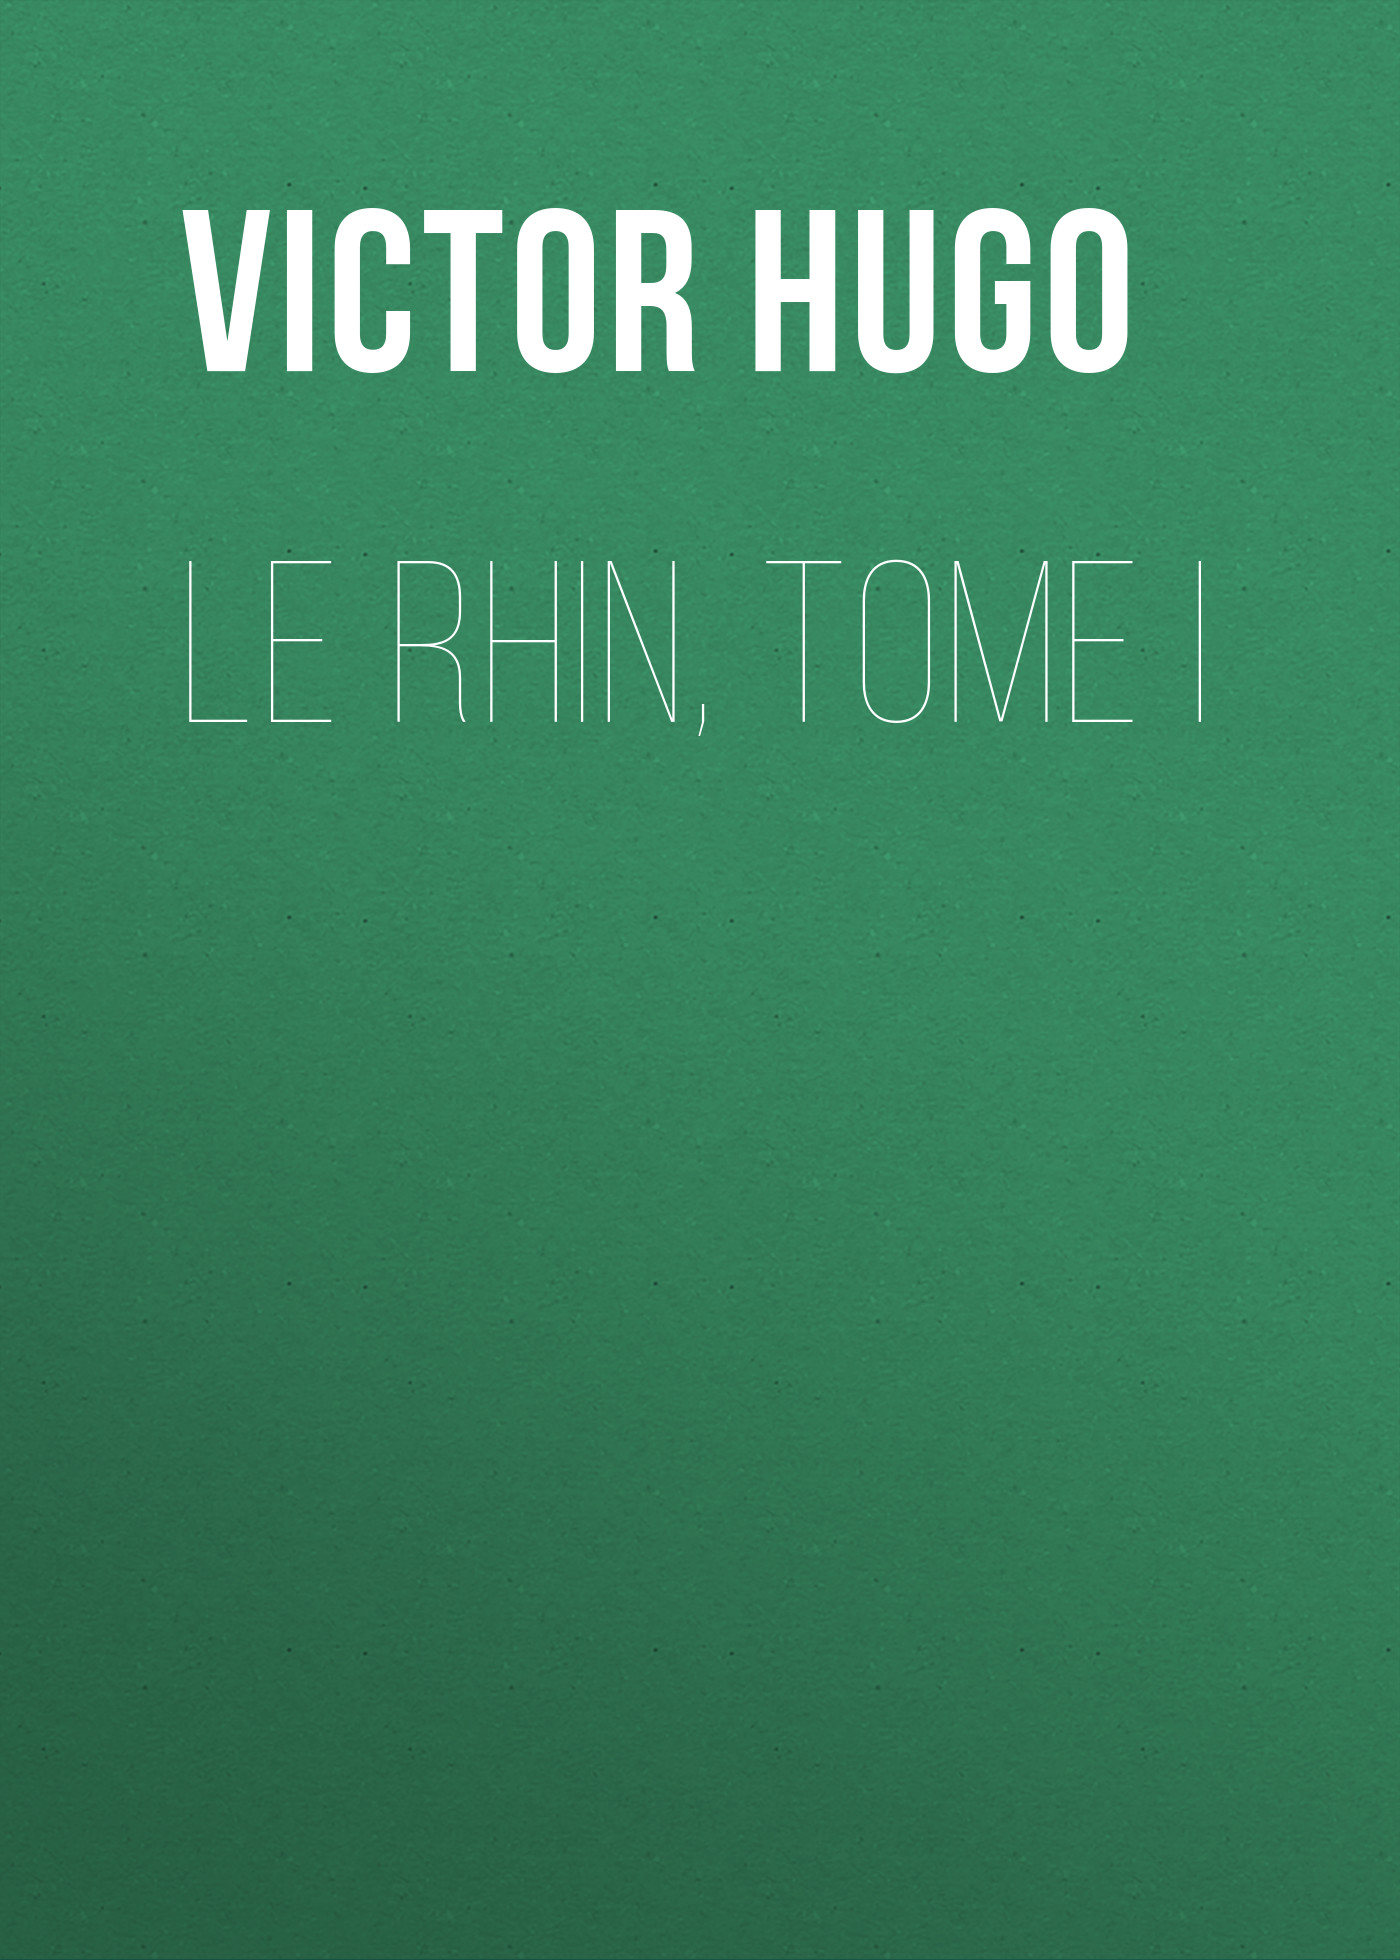 Книга Le Rhin, Tome I из серии , созданная Victor Hugo, может относится к жанру Литература 19 века, Зарубежная старинная литература, Зарубежная классика. Стоимость электронной книги Le Rhin, Tome I с идентификатором 25230284 составляет 0 руб.